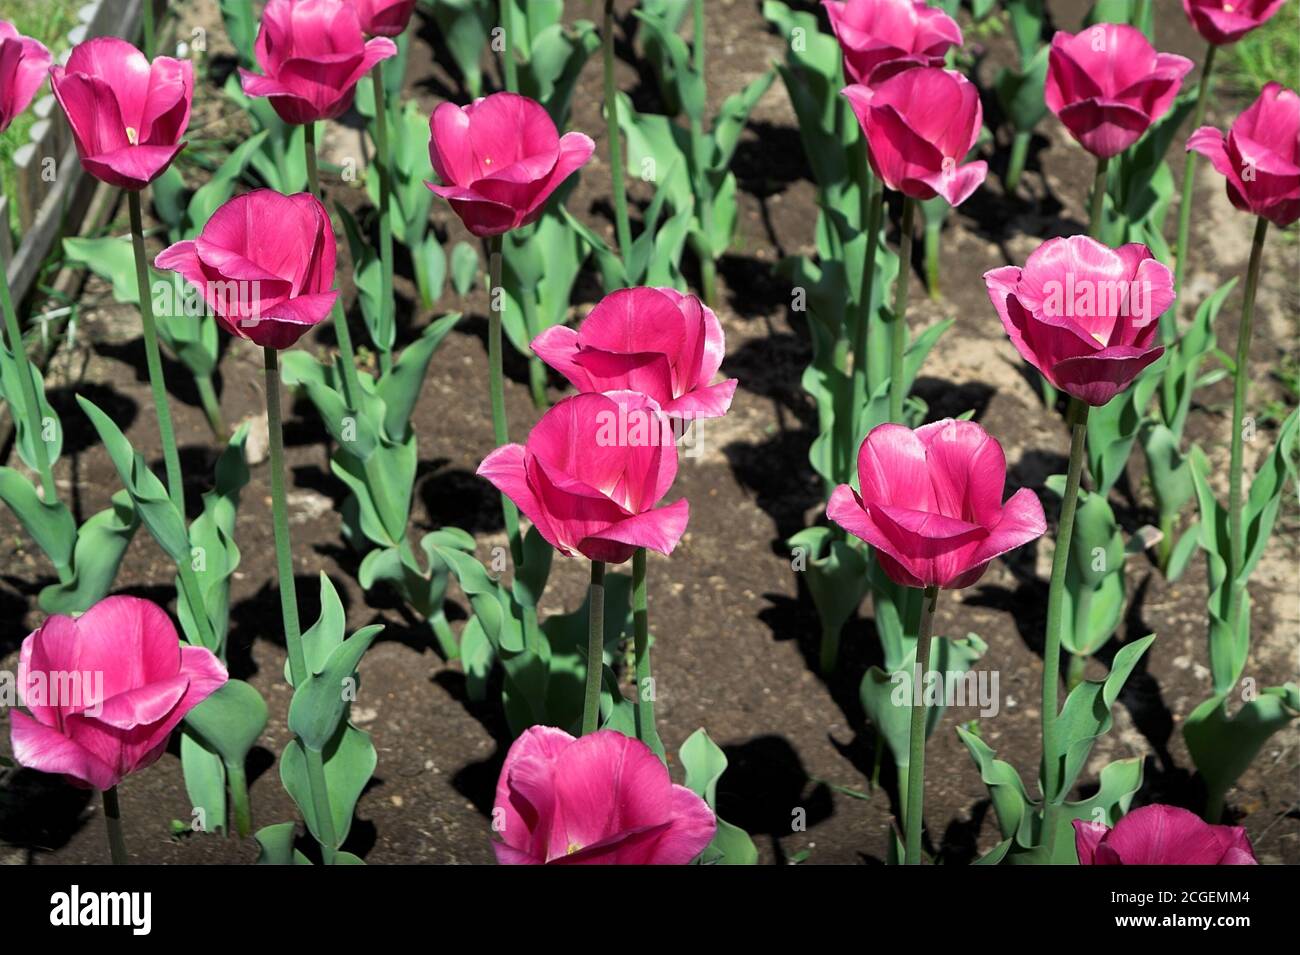 Pologne, Polen; Tulipany (Tulipa L.); tulipes rouges poussant dans le jardin dans le sol.Stylo à cœur, die im Garten im Boden wachsen.生長在地面的庭院裡的紅色鬱金香。 Banque D'Images